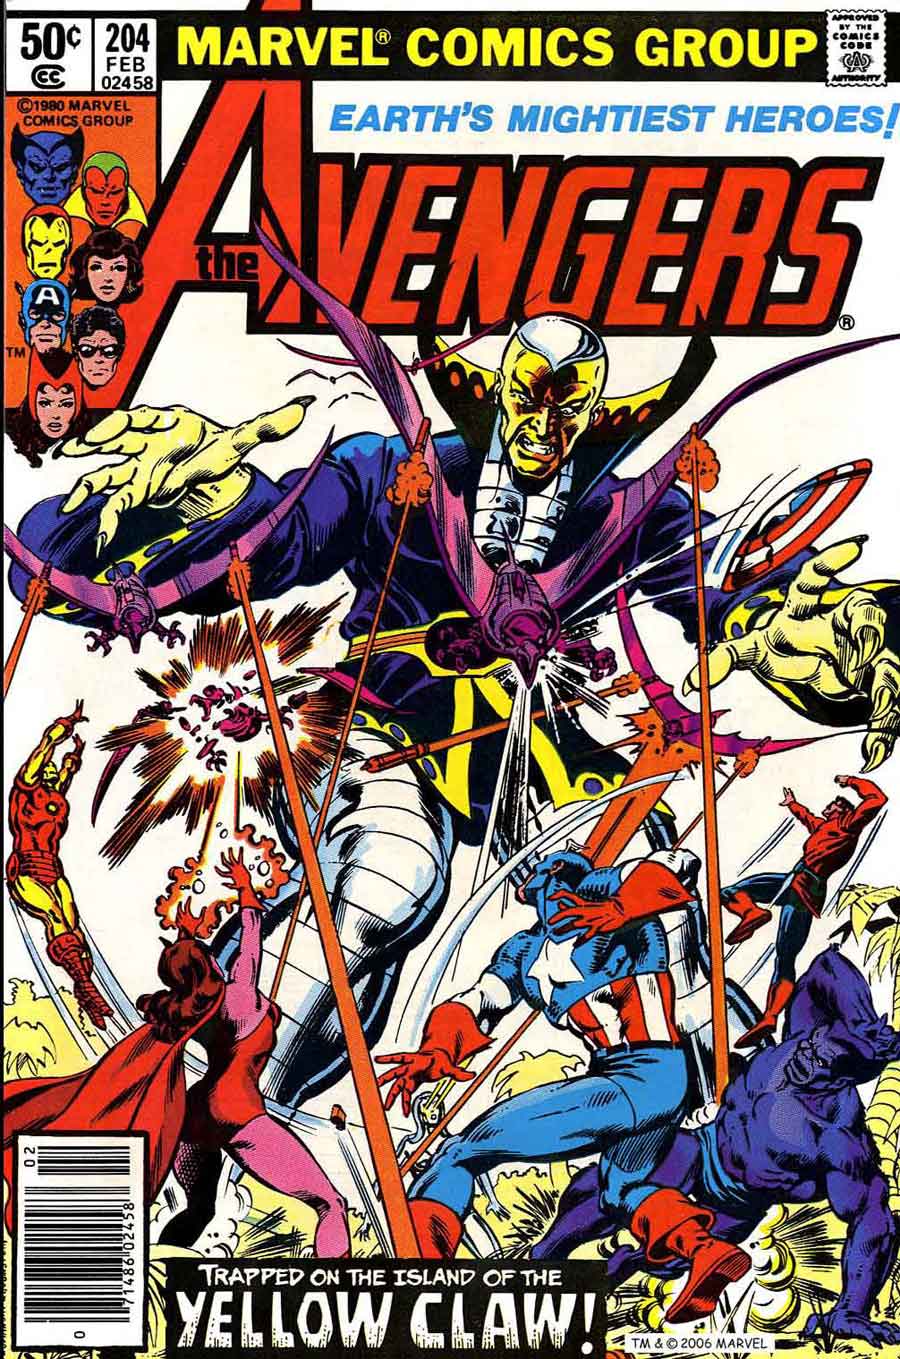 Avengers v1 #204 marvel comic book cover art by Don Newton